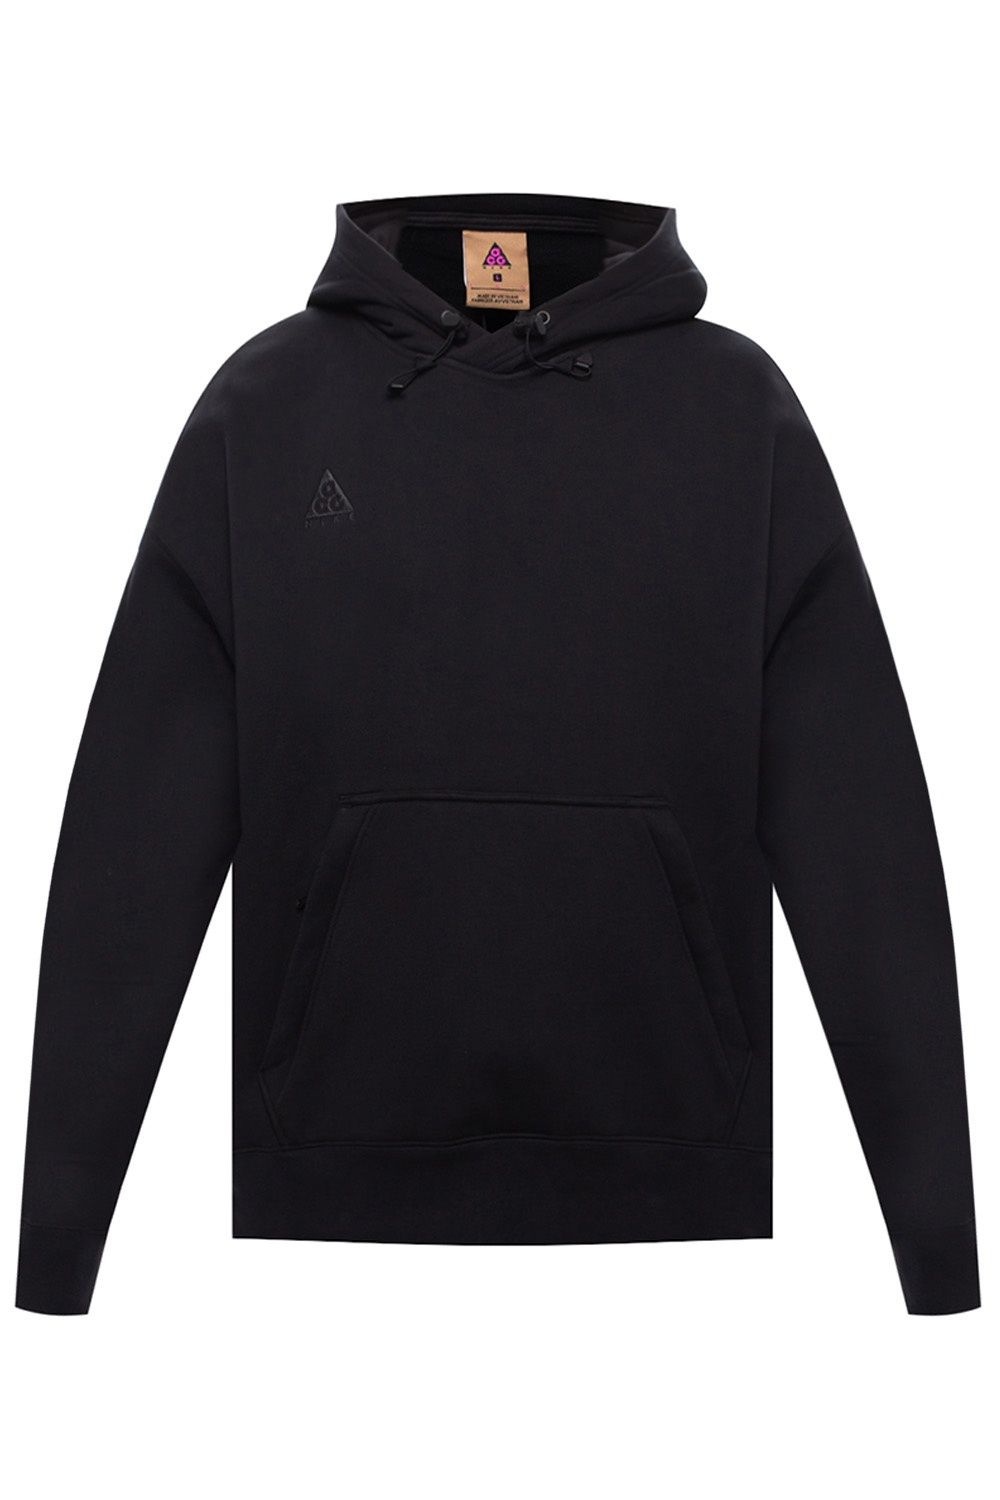 acg black hoodie